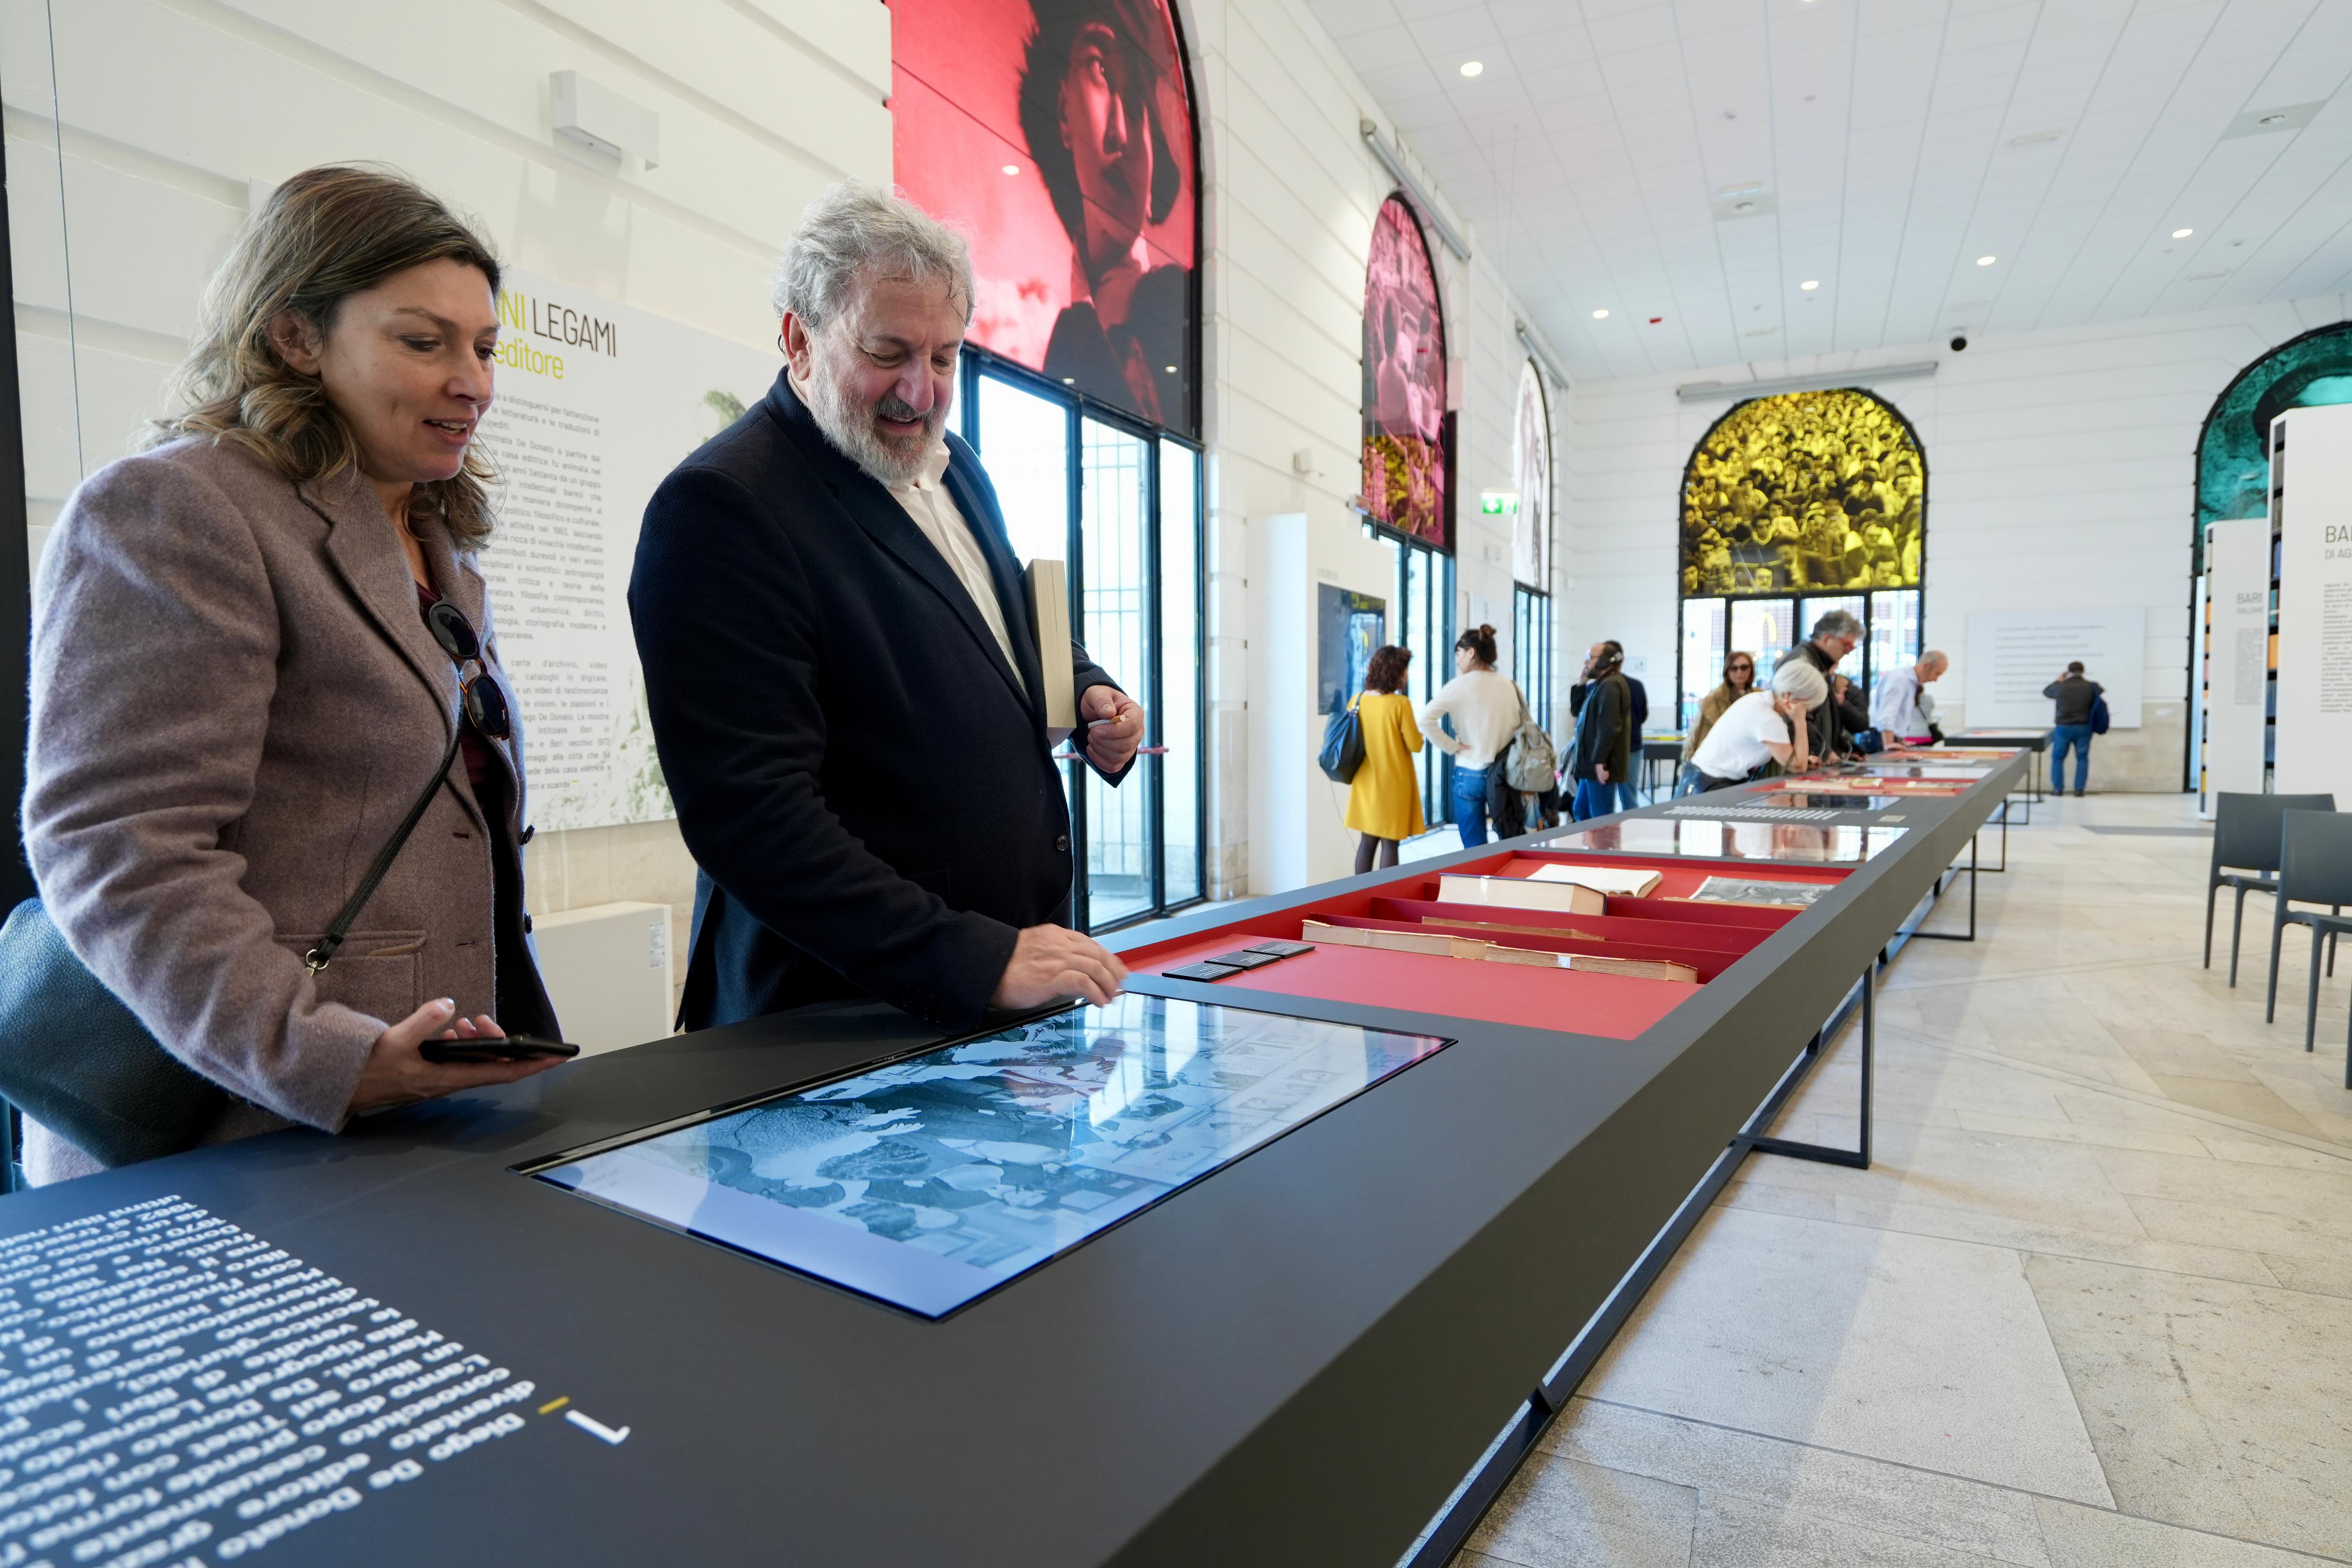 Galleria Il presidente Emiliano alla mostra “Visioni, passioni, legami. Diego De Donato editore” - Diapositiva 5 di 8